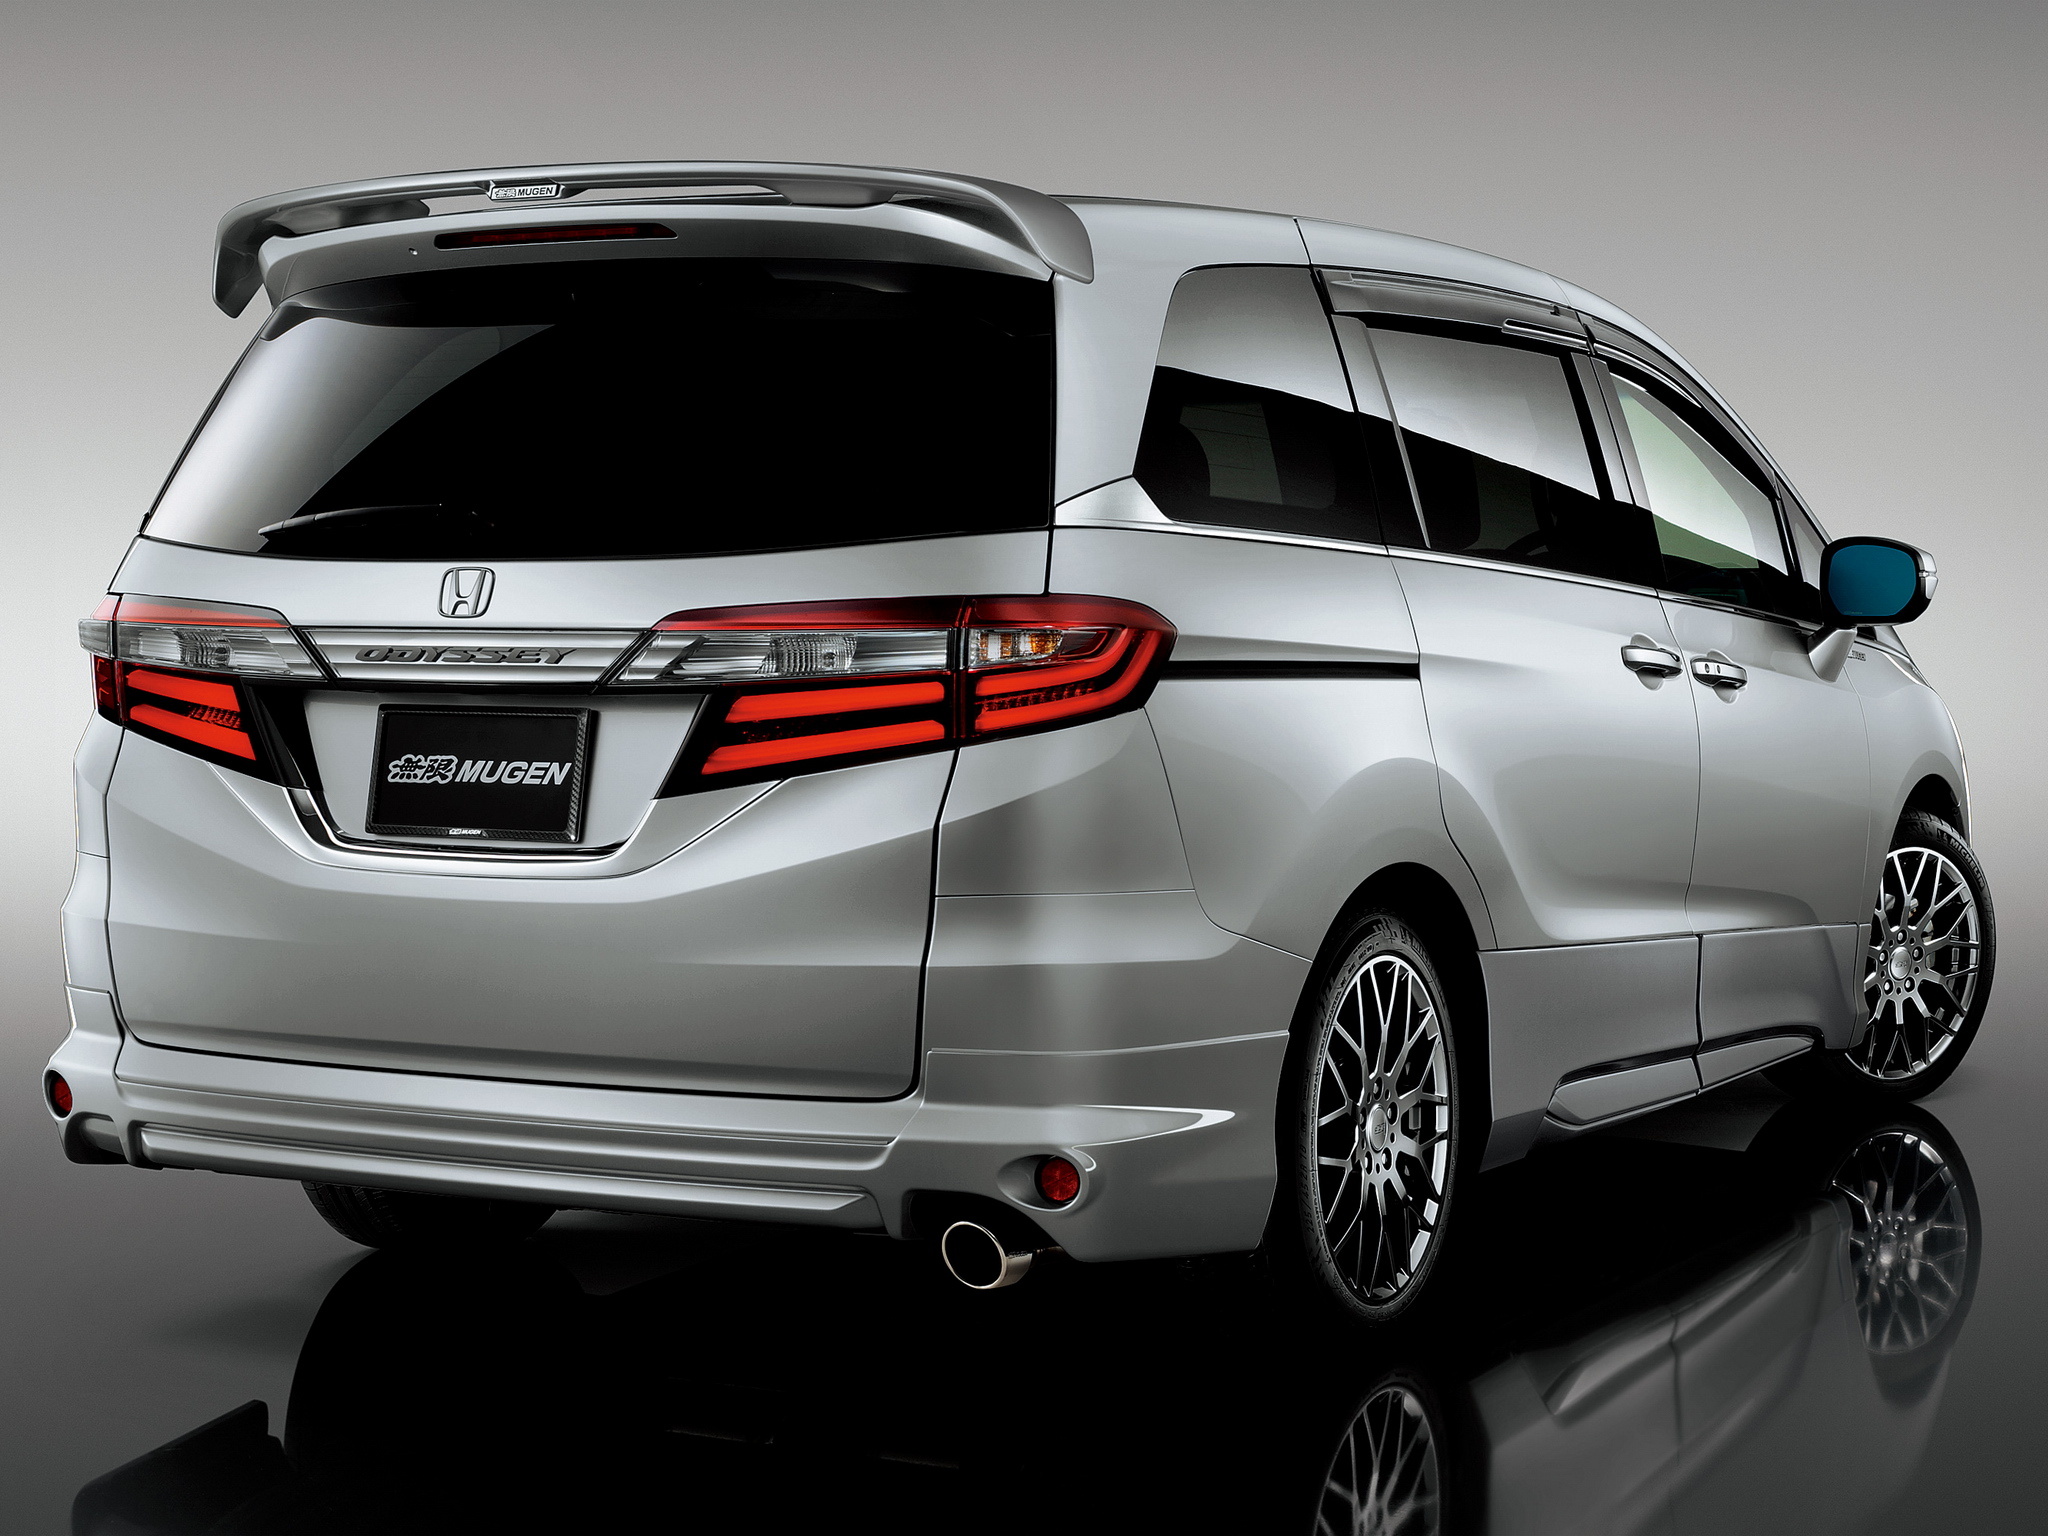 Honda Odyssey, 2014 model, Mugen tuning, SUV van, 2050x1540 HD Desktop